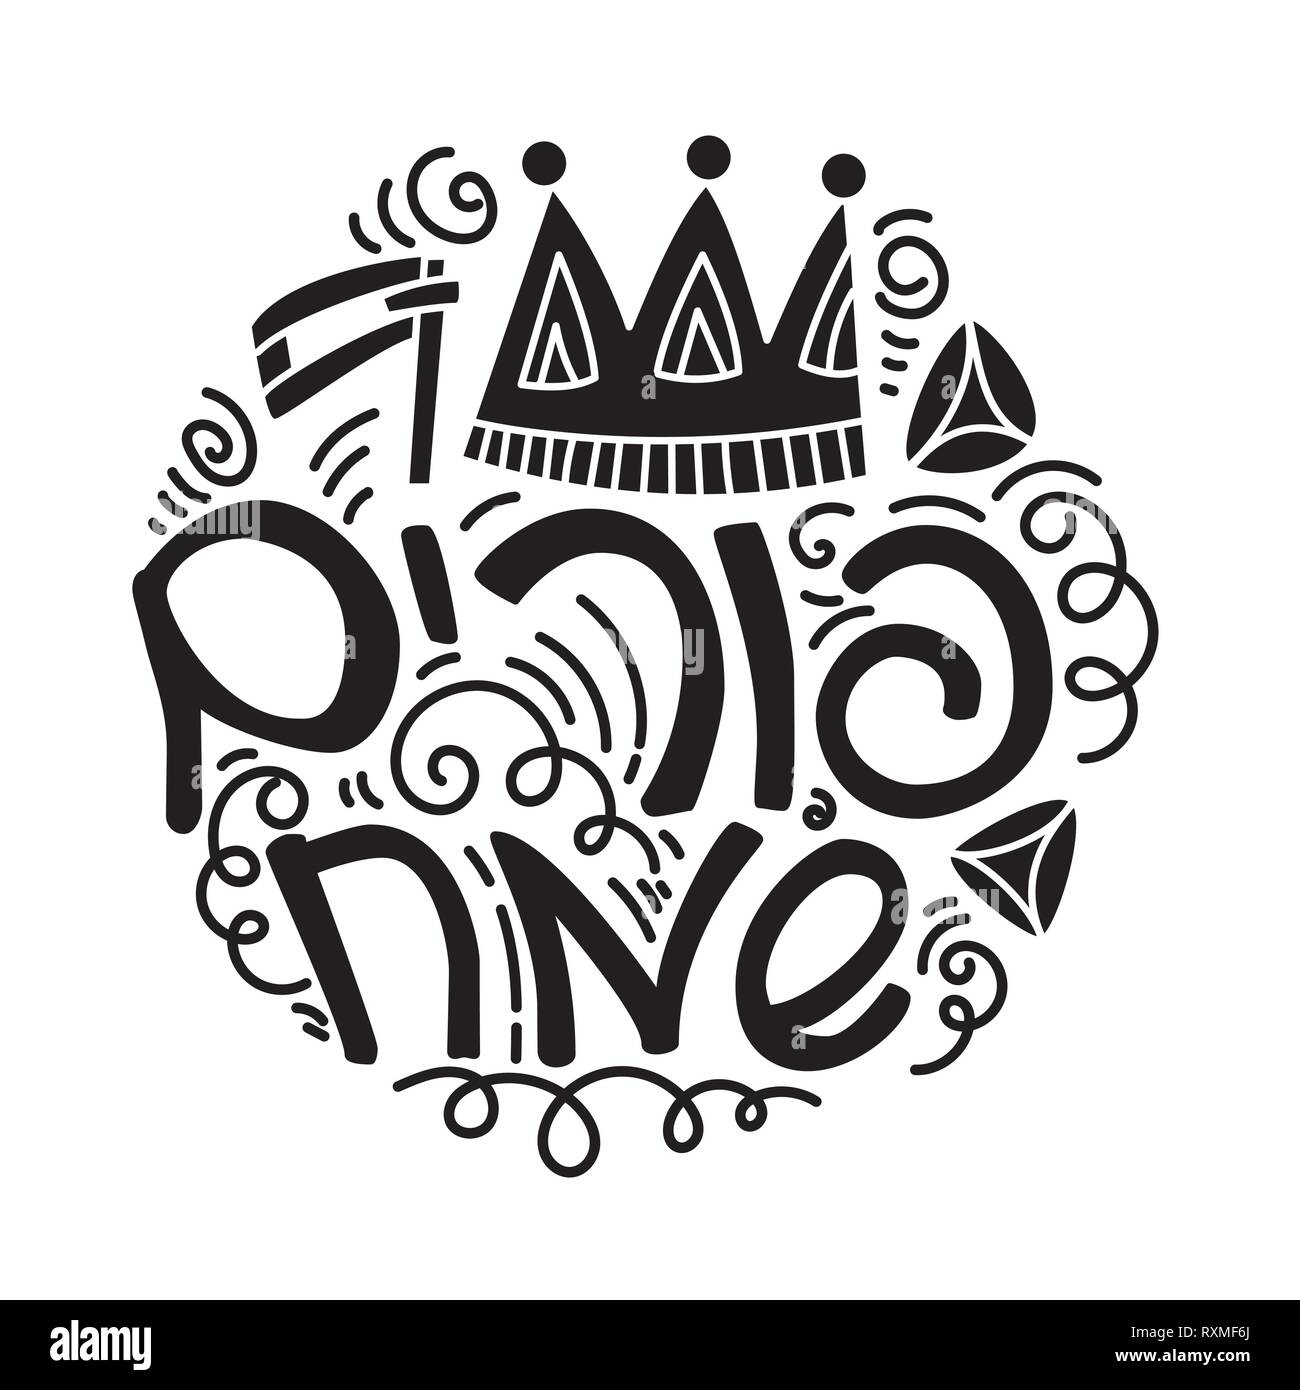 Tarjeta de felicitación de Purim en estilo doodle con corona, hacer ruido, hamantaschen y texto hebreo Purim feliz. Ilustración del Vector